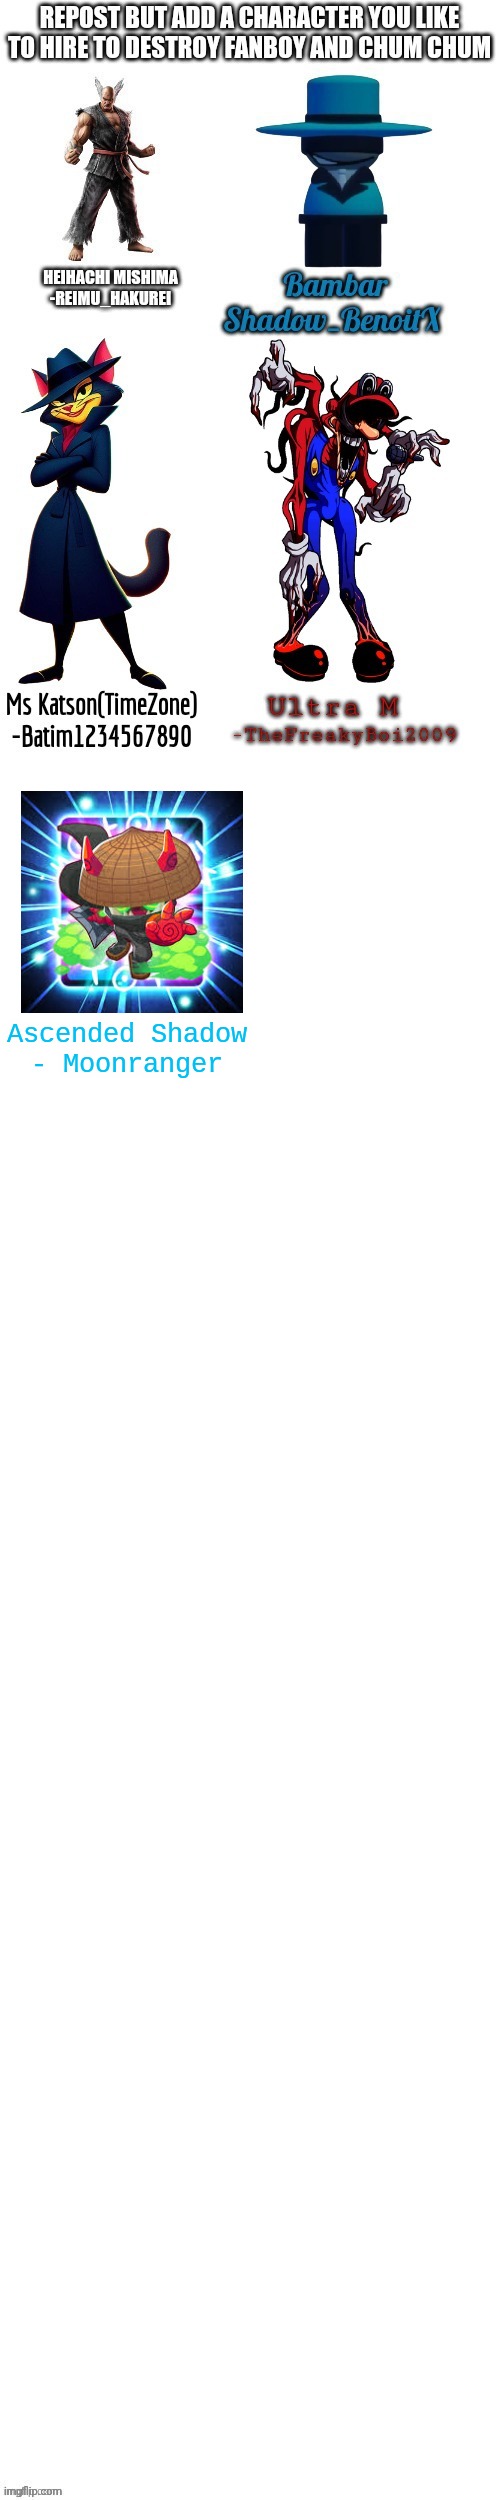 Ascended Shadow - Moonranger | made w/ Imgflip meme maker